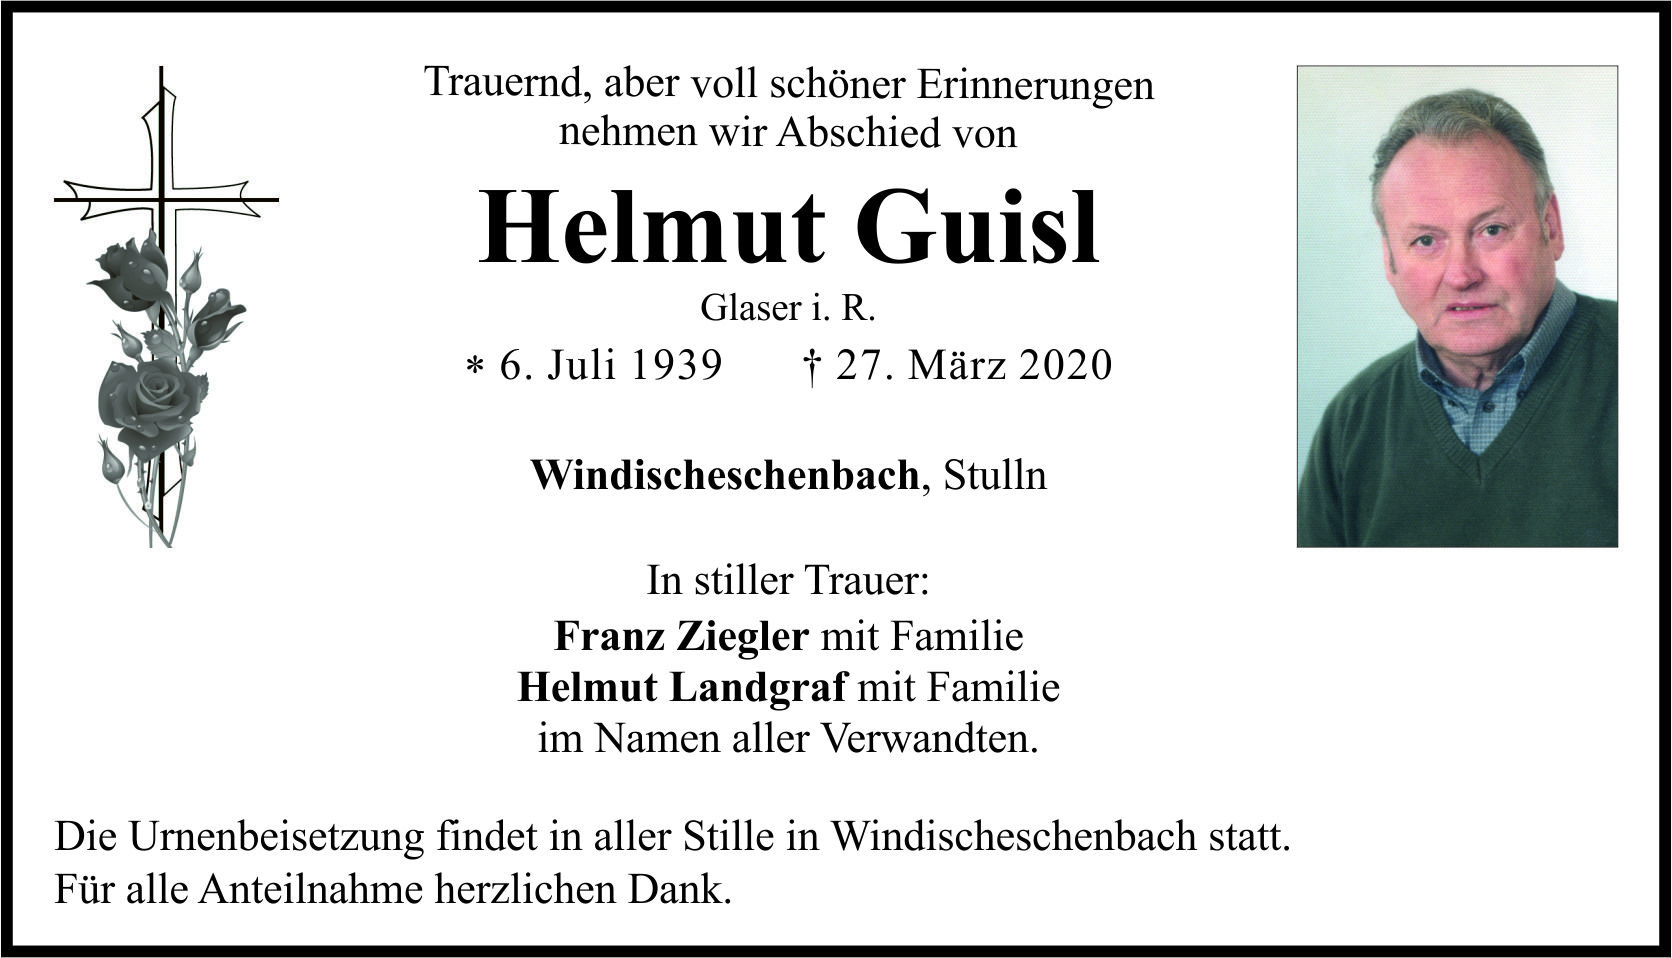 Traueranzeige Helmut Guisl